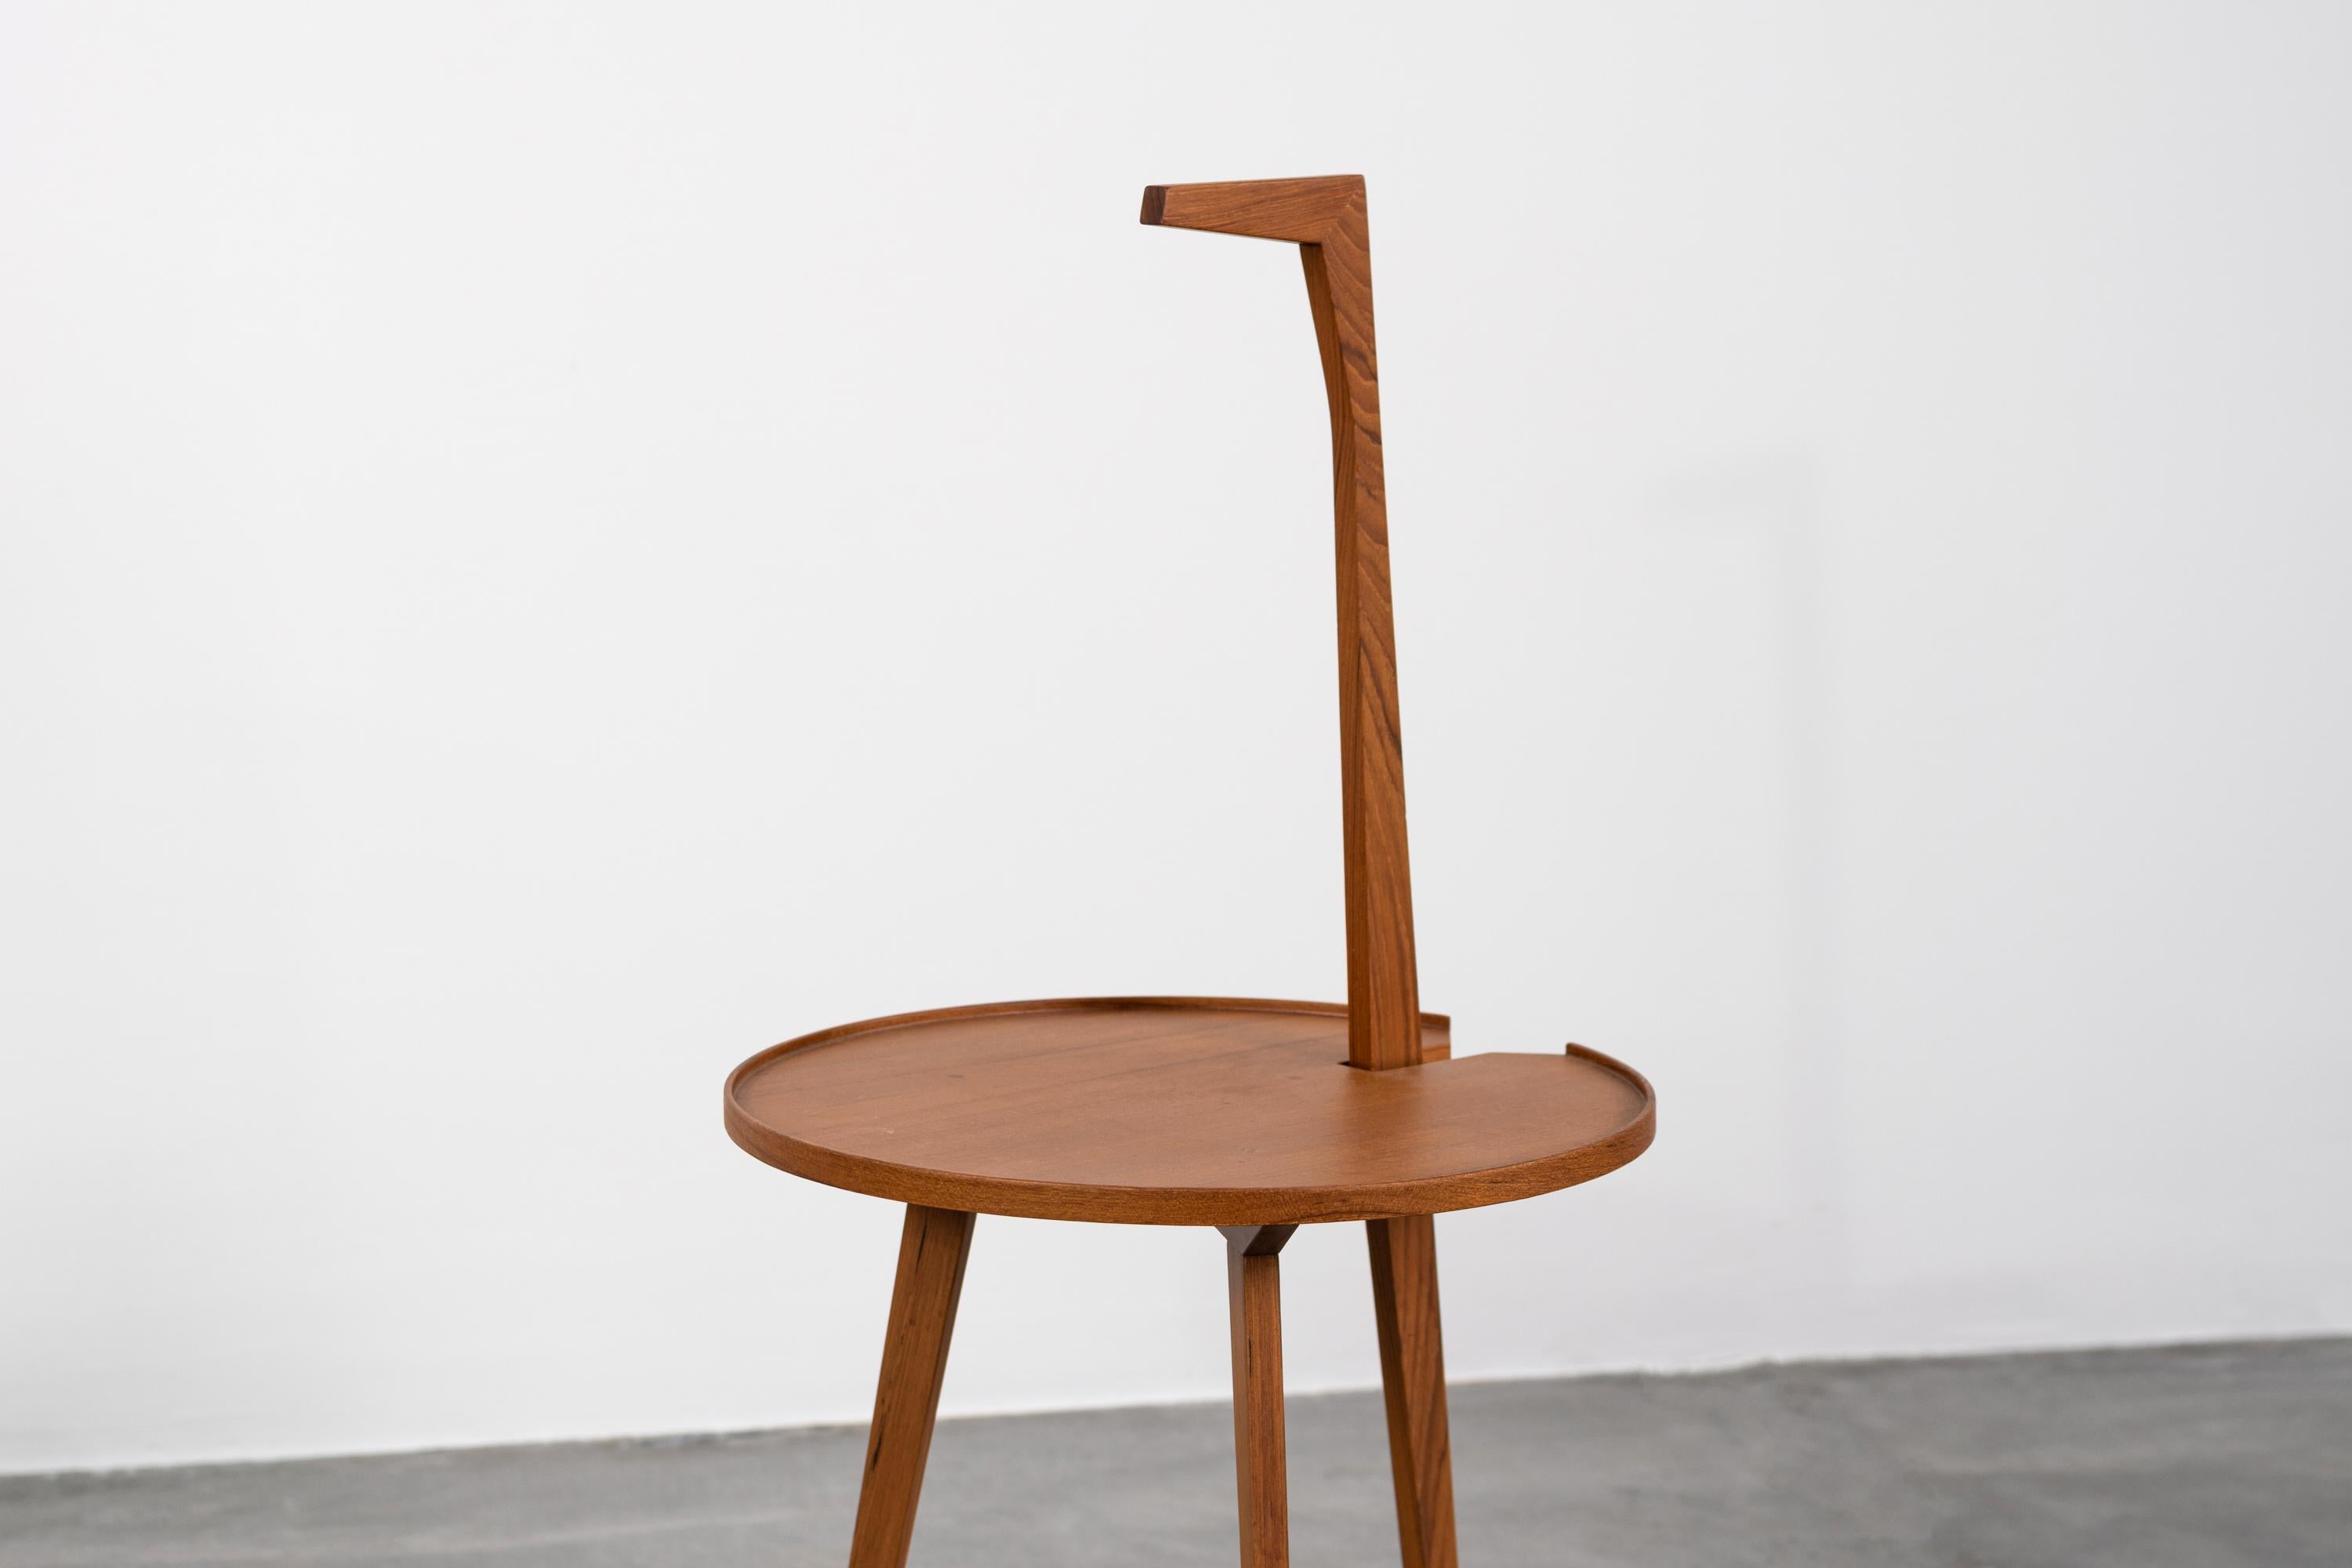 Table basse Cicognino entièrement réalisée en bois de teck, conçue par Franco Albini en 1952 et produite pour la première fois par la société italienne Poggi Pavia à partir des années 1950.

La table basse Cicognino a été conçue en 1952 par le